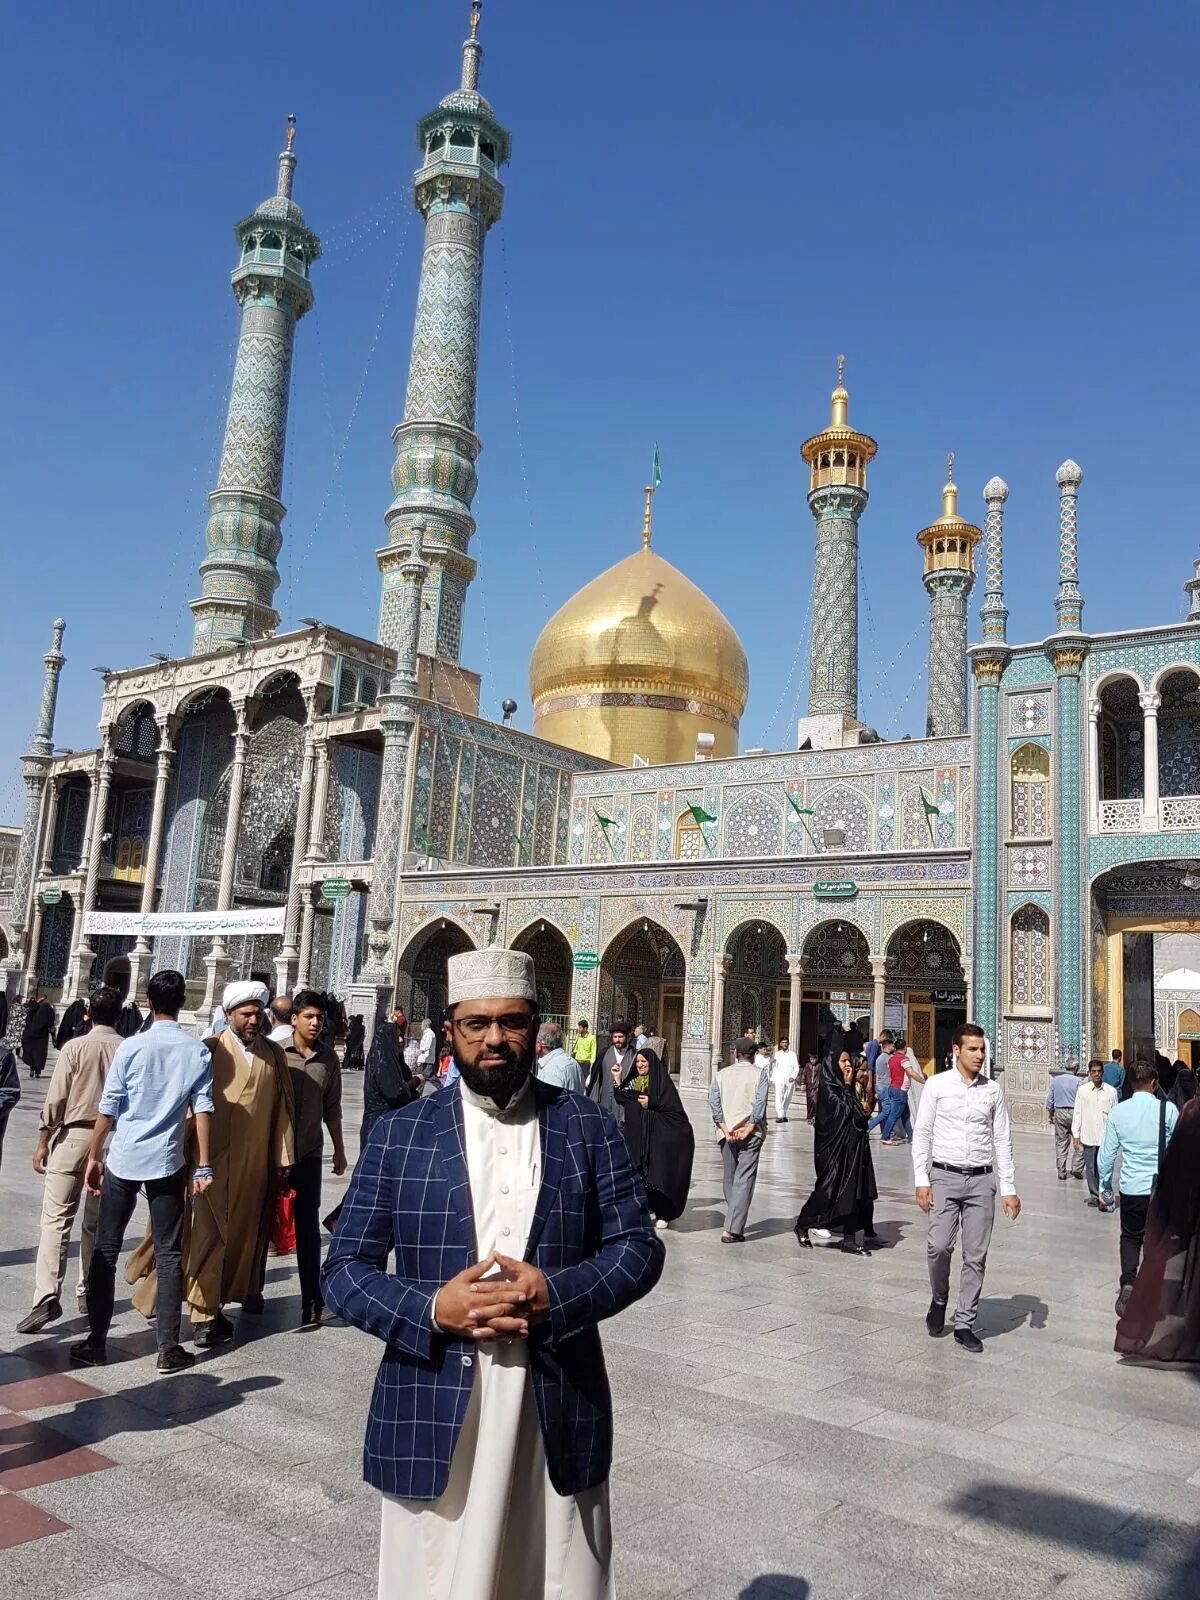 Мечеть суннитов. Шиитский мечеть в Бухаре. Суннитские мечети в Иране. Суннитская мечеть в Тегеране. Сунниты азербайджана